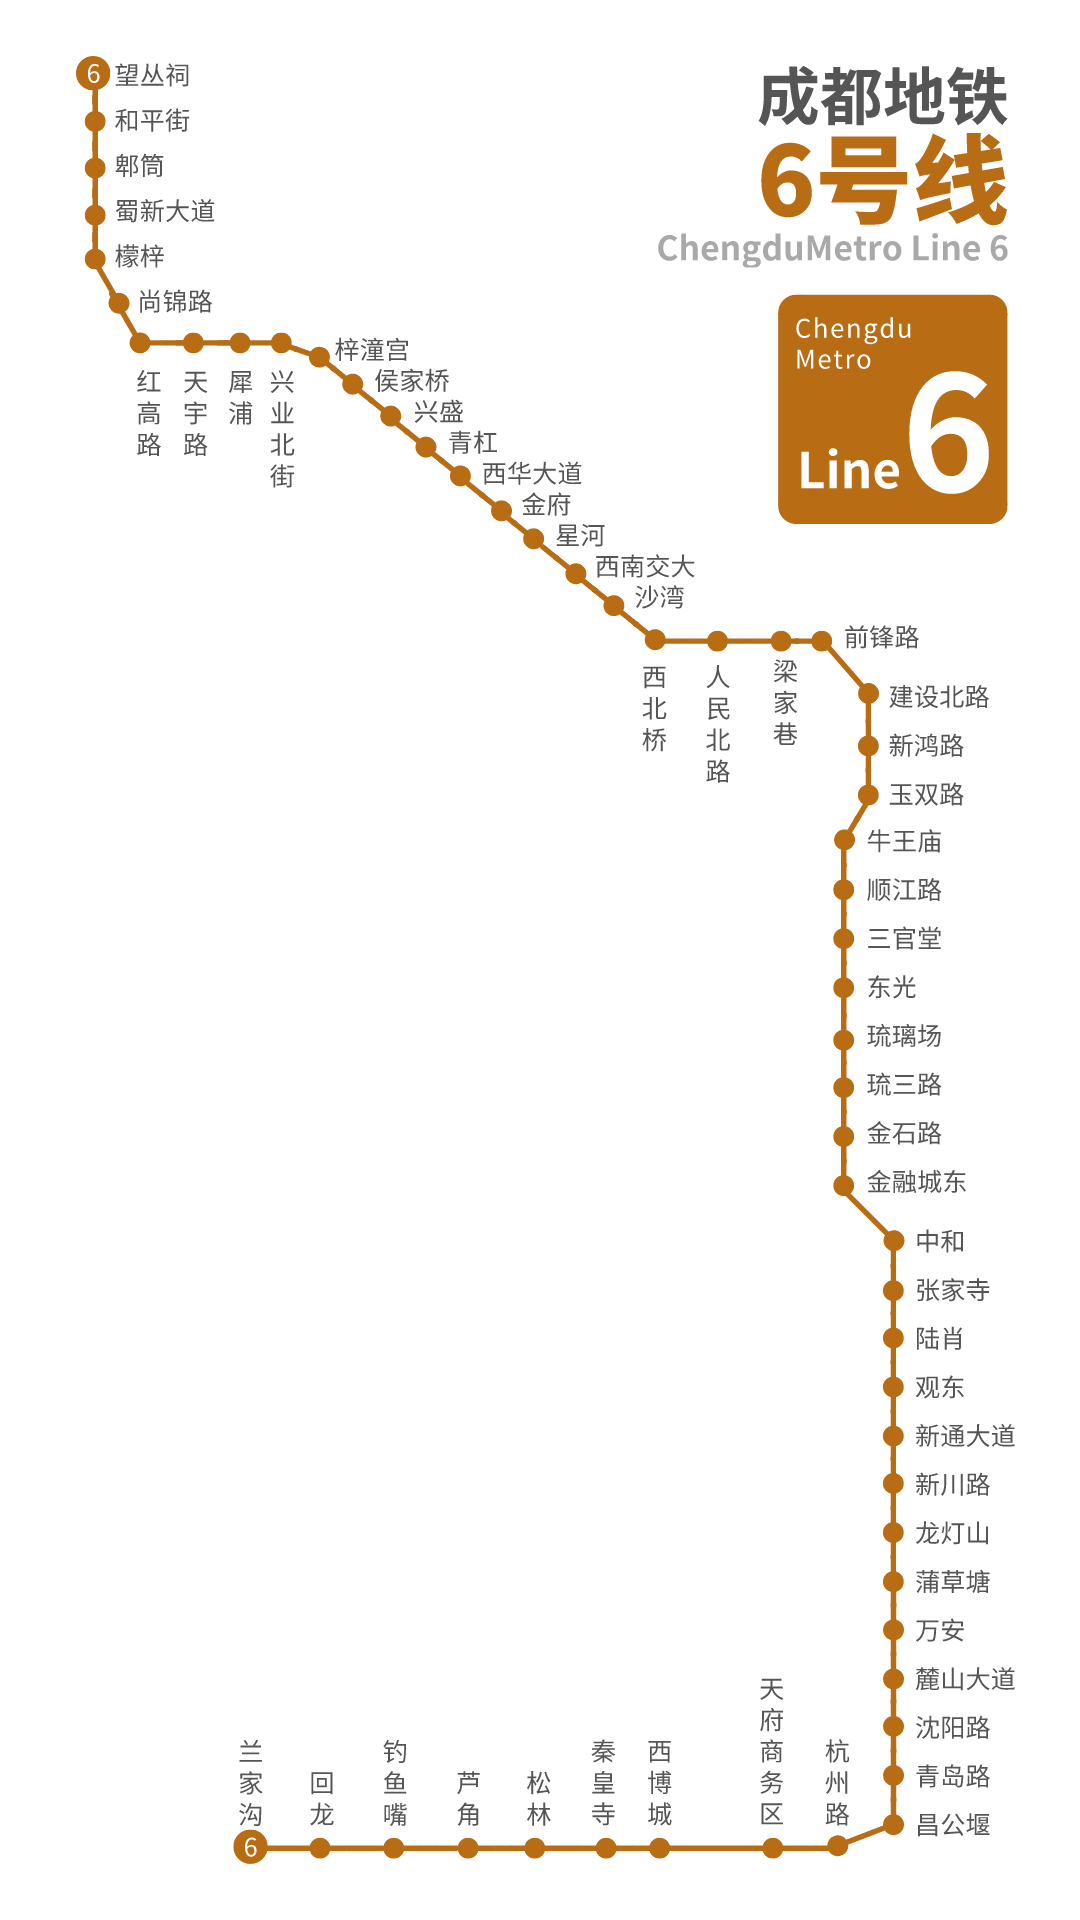 成都地铁6号线一二三期工程北起望丛祠,南至兰家沟,线路总长约68.